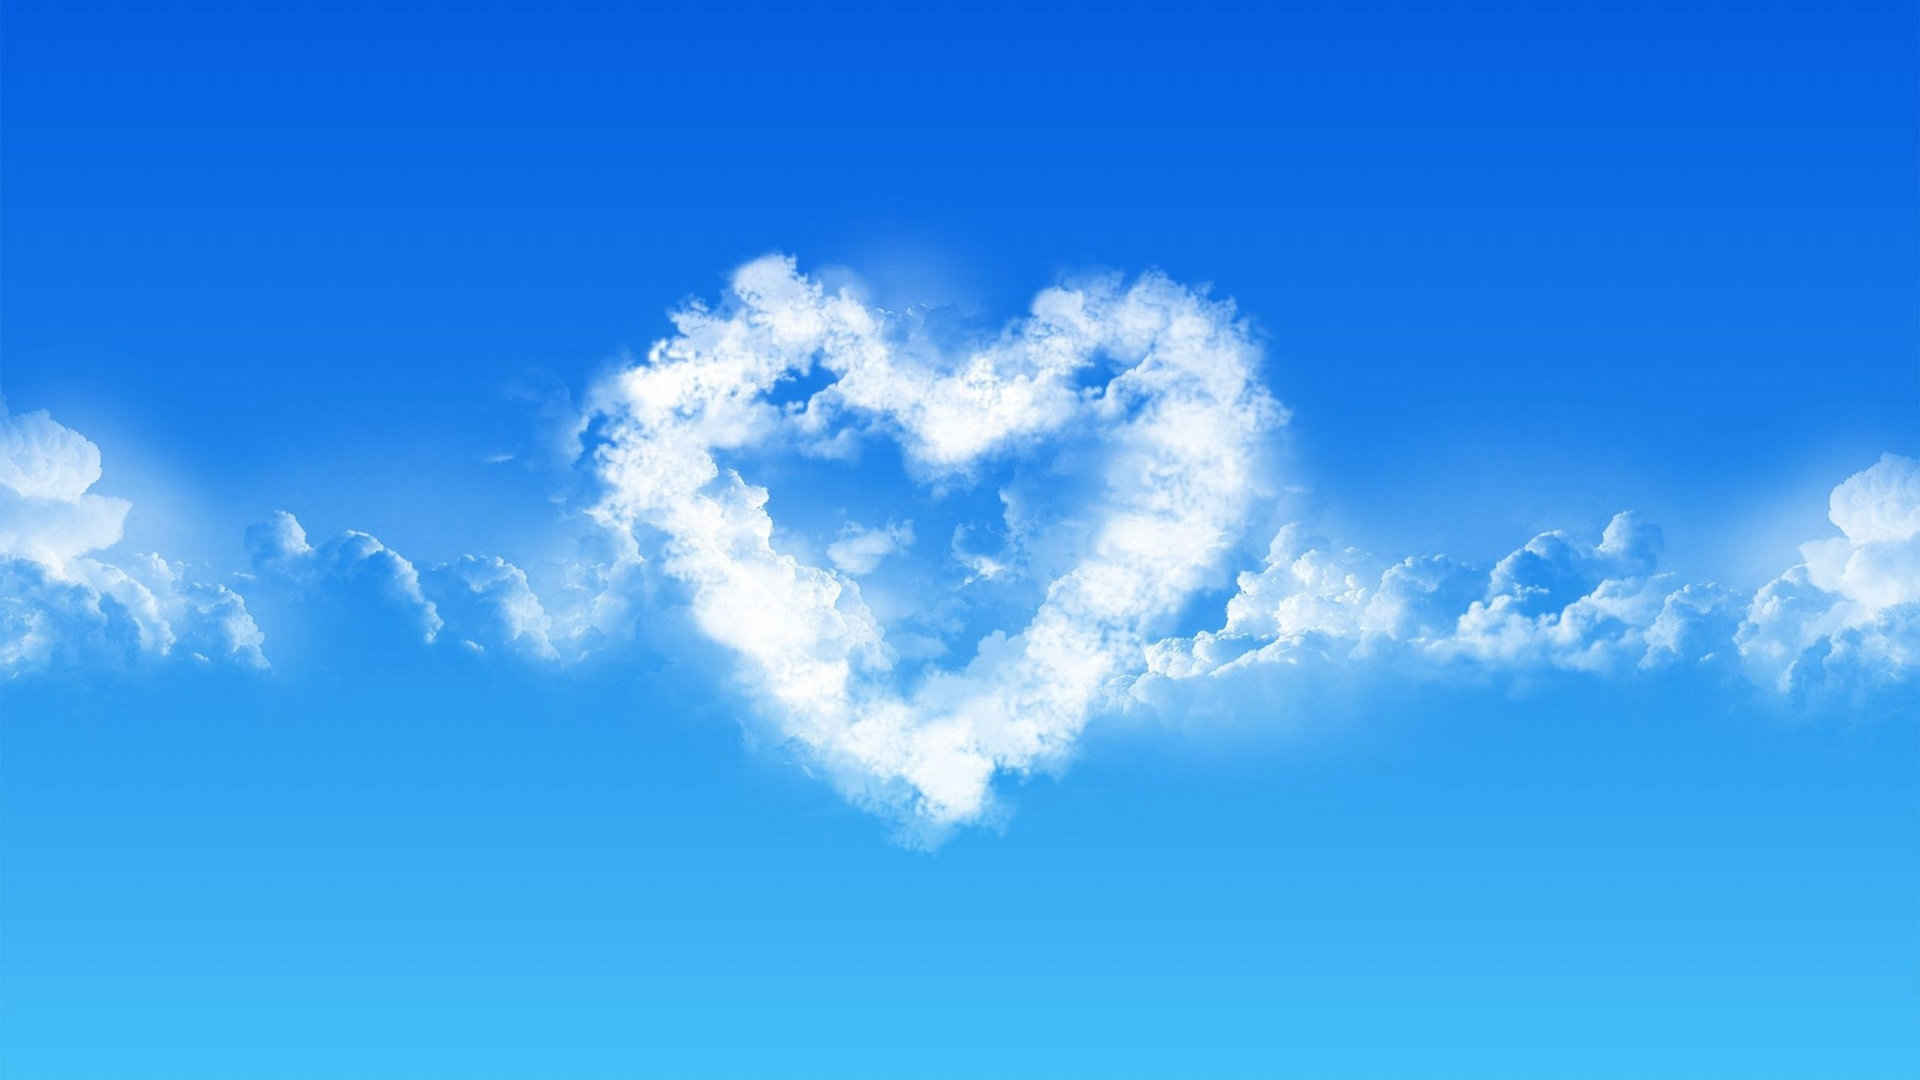 精选天空中的爱心形云朵创意爱心图片素材唯美风景高清图片下载第二辑-风景壁纸-壁纸下载-美桌网